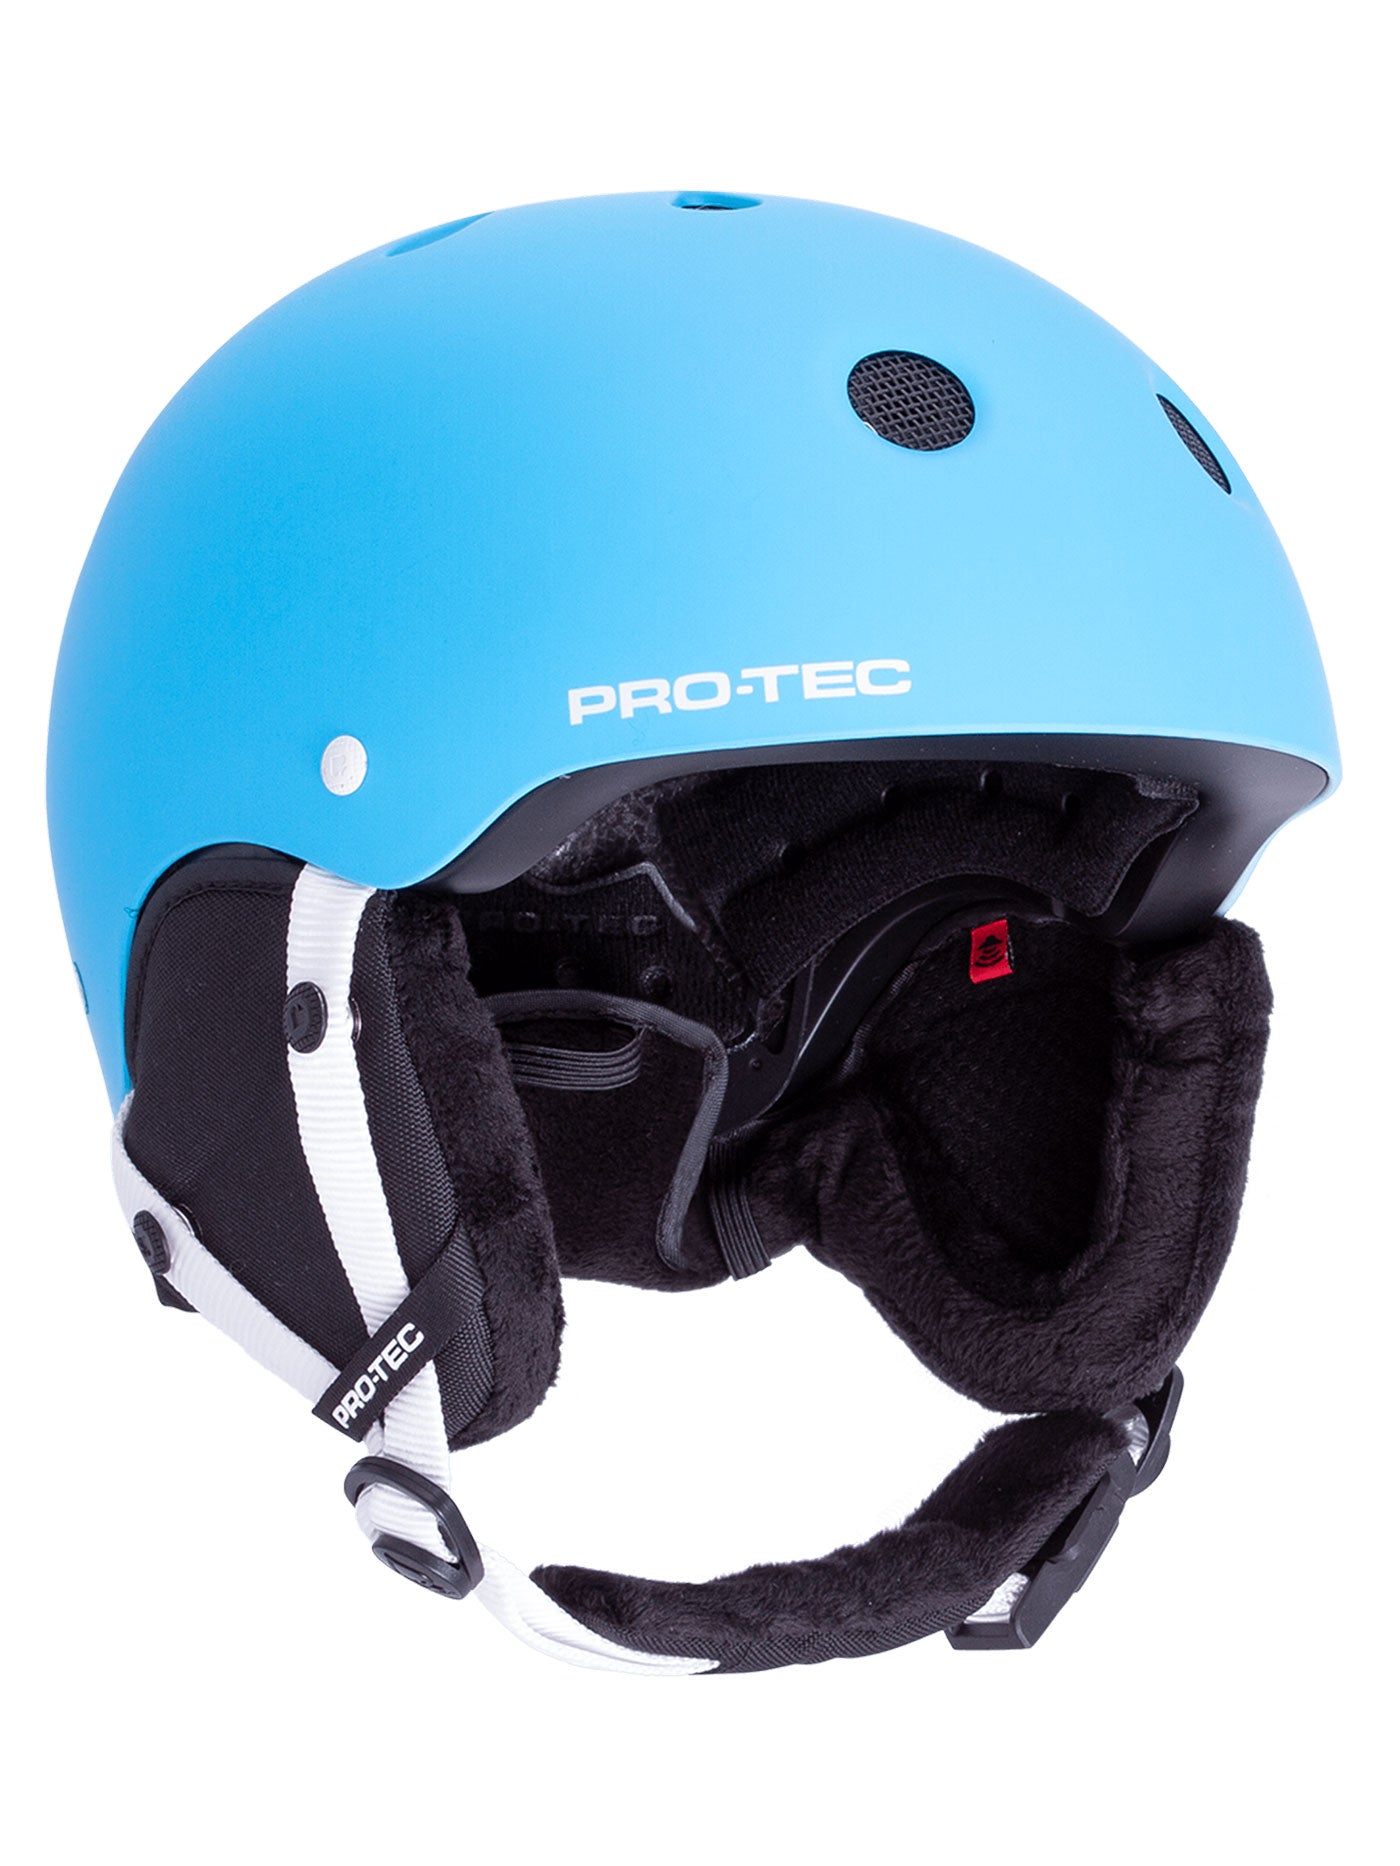 Pro-Tec Classic Certified Snow Helmet